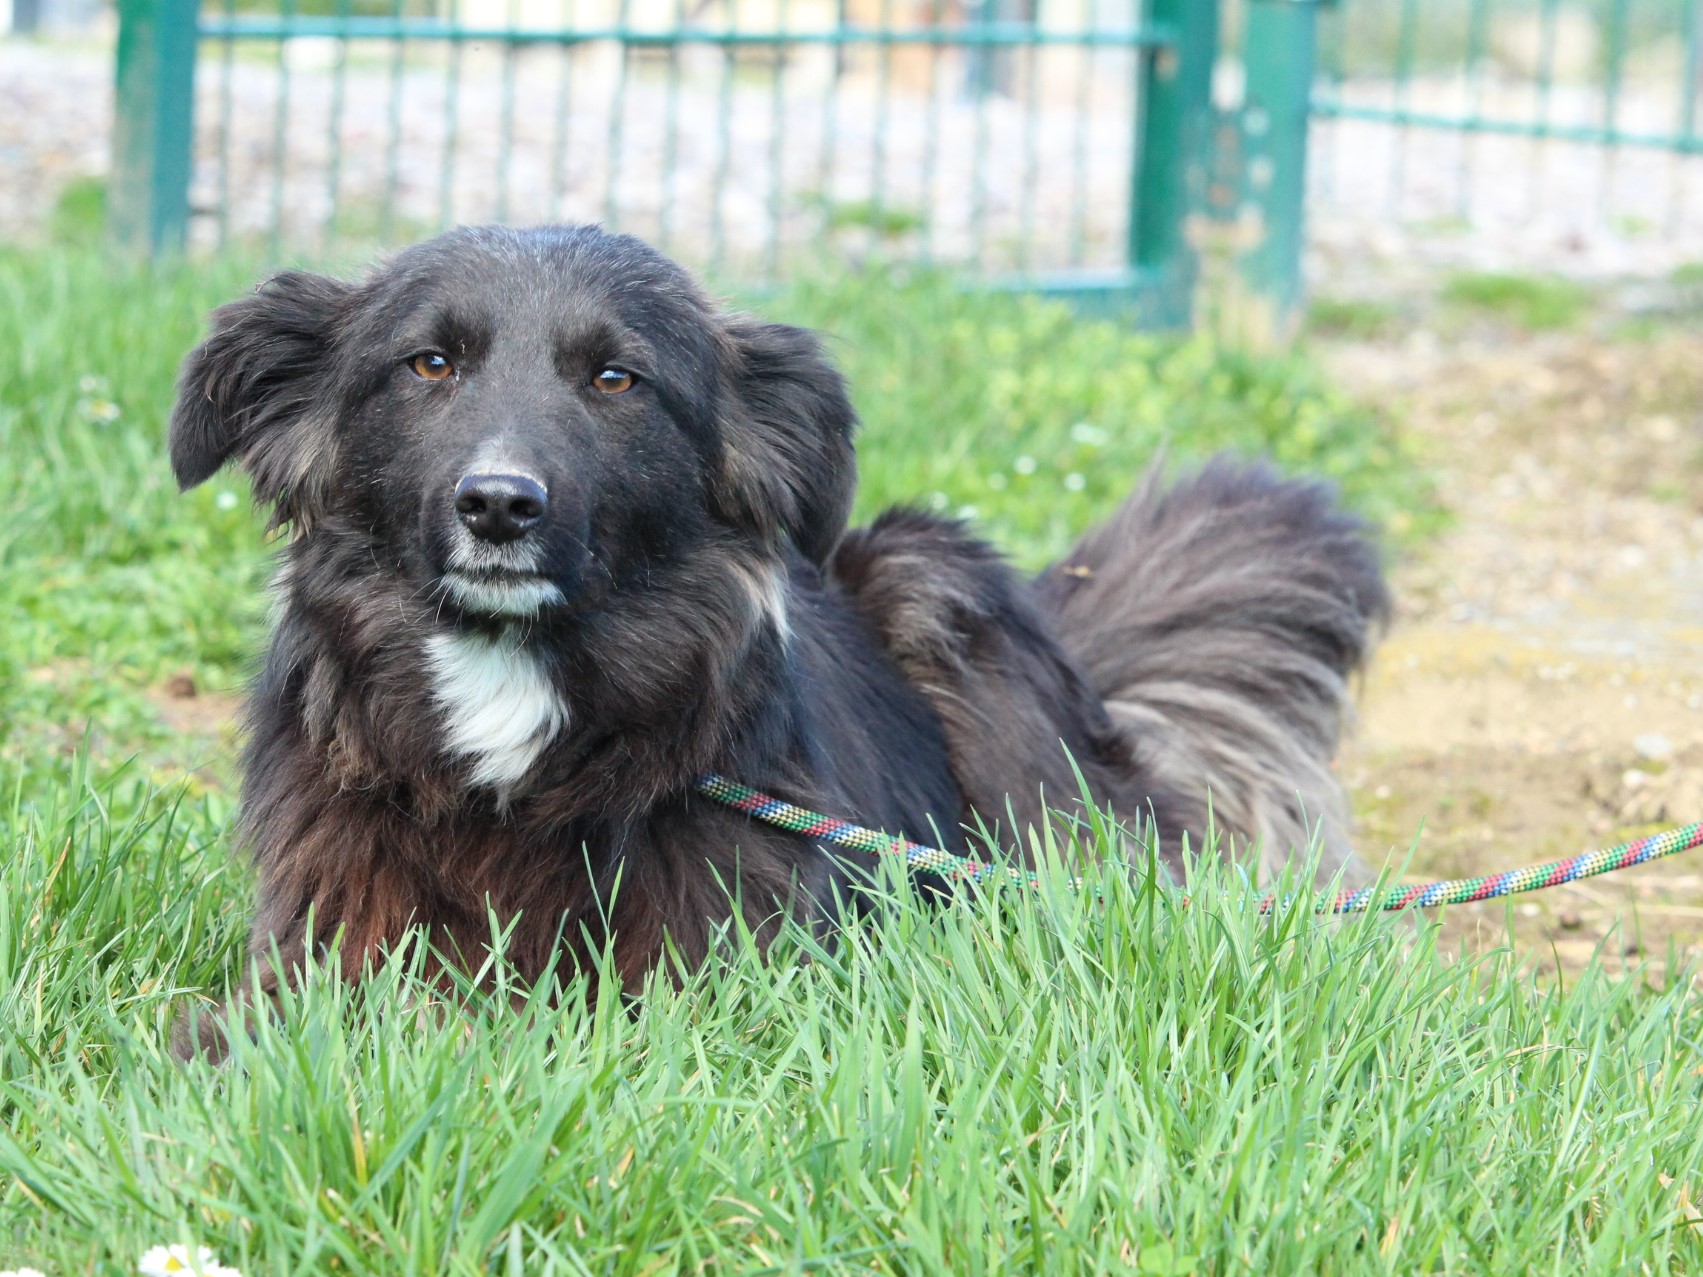 Tierschutzverein Bellas Pfotenhilfe Hunderettung Bosnien Hund adoptieren Malina